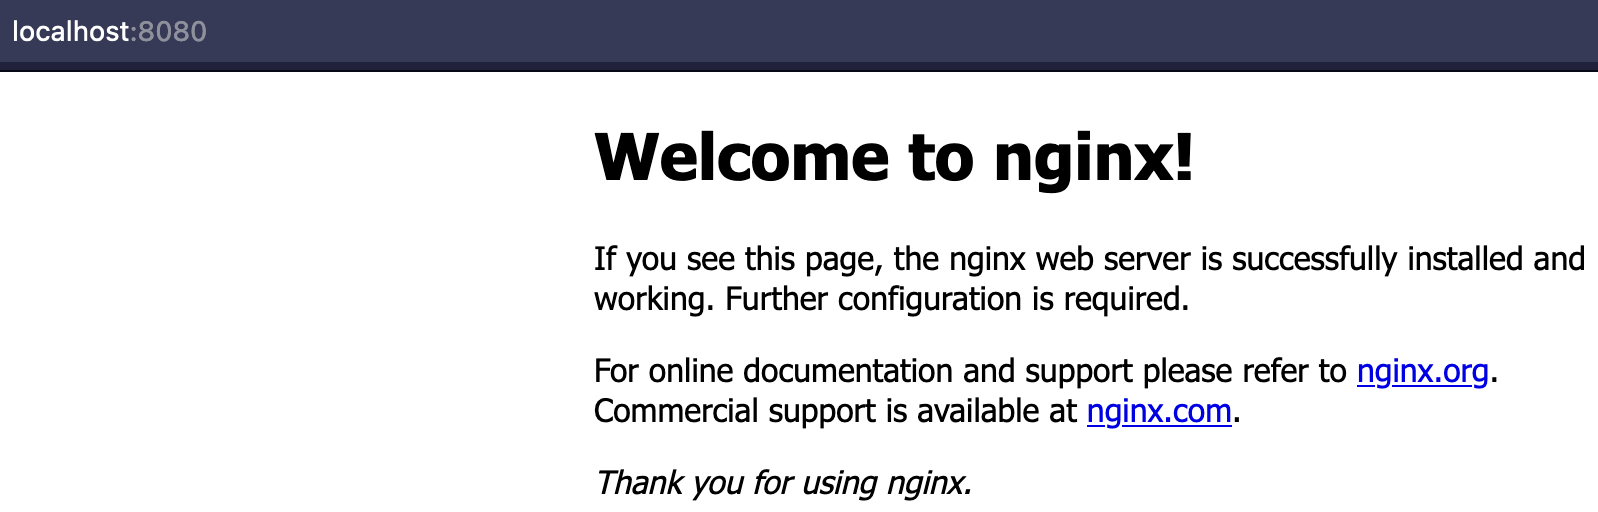 Появится стандартная страница Nginx!